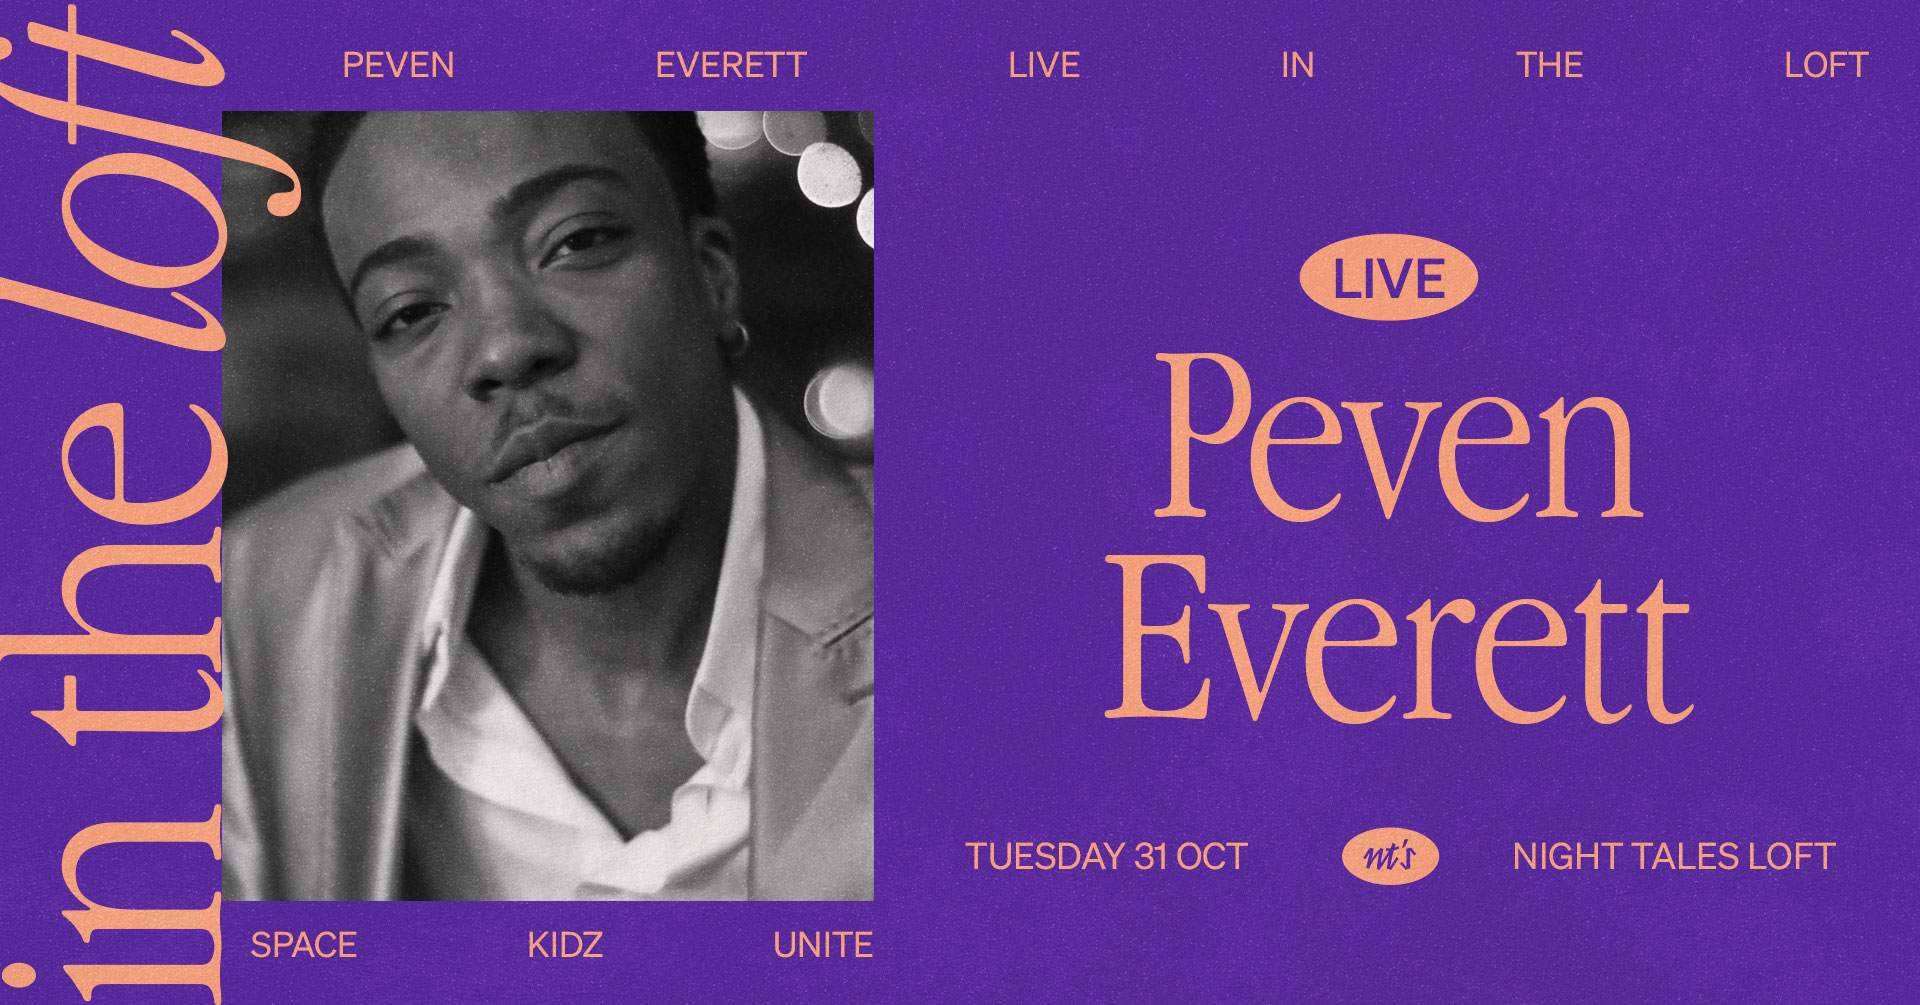 in the loft: Peven Everett (Live) - フライヤー表